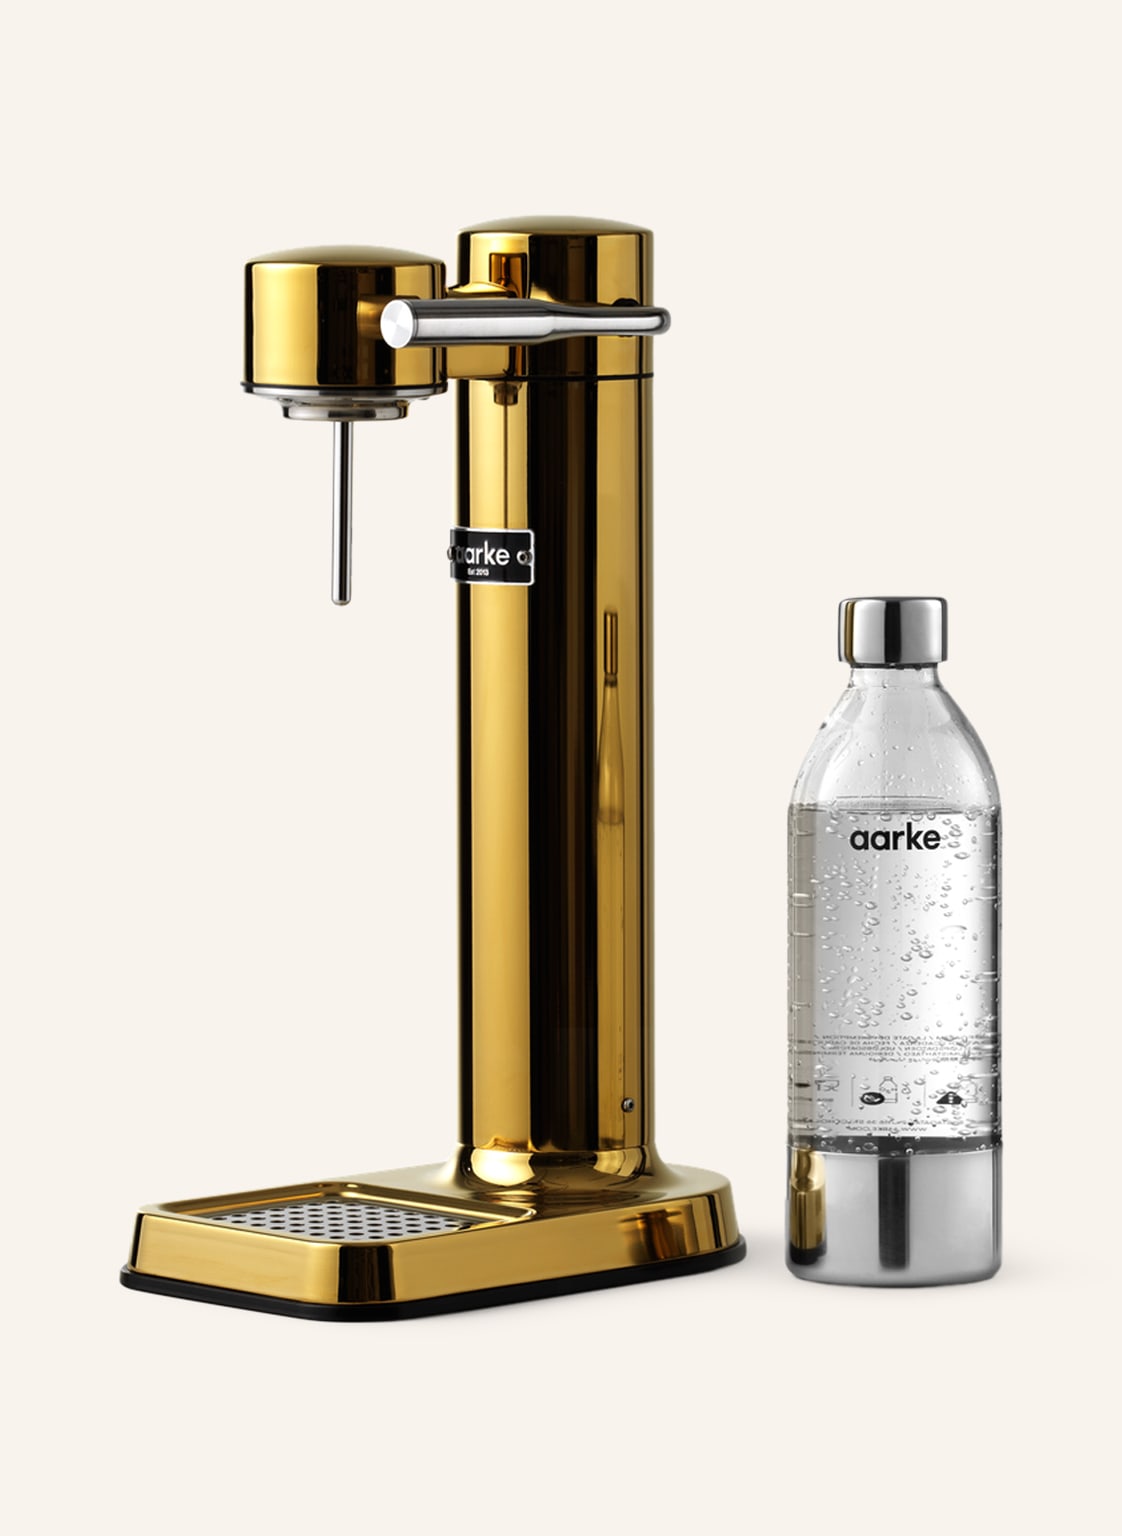 Image of Aarke Wassersprudler Carbonator 3 gold